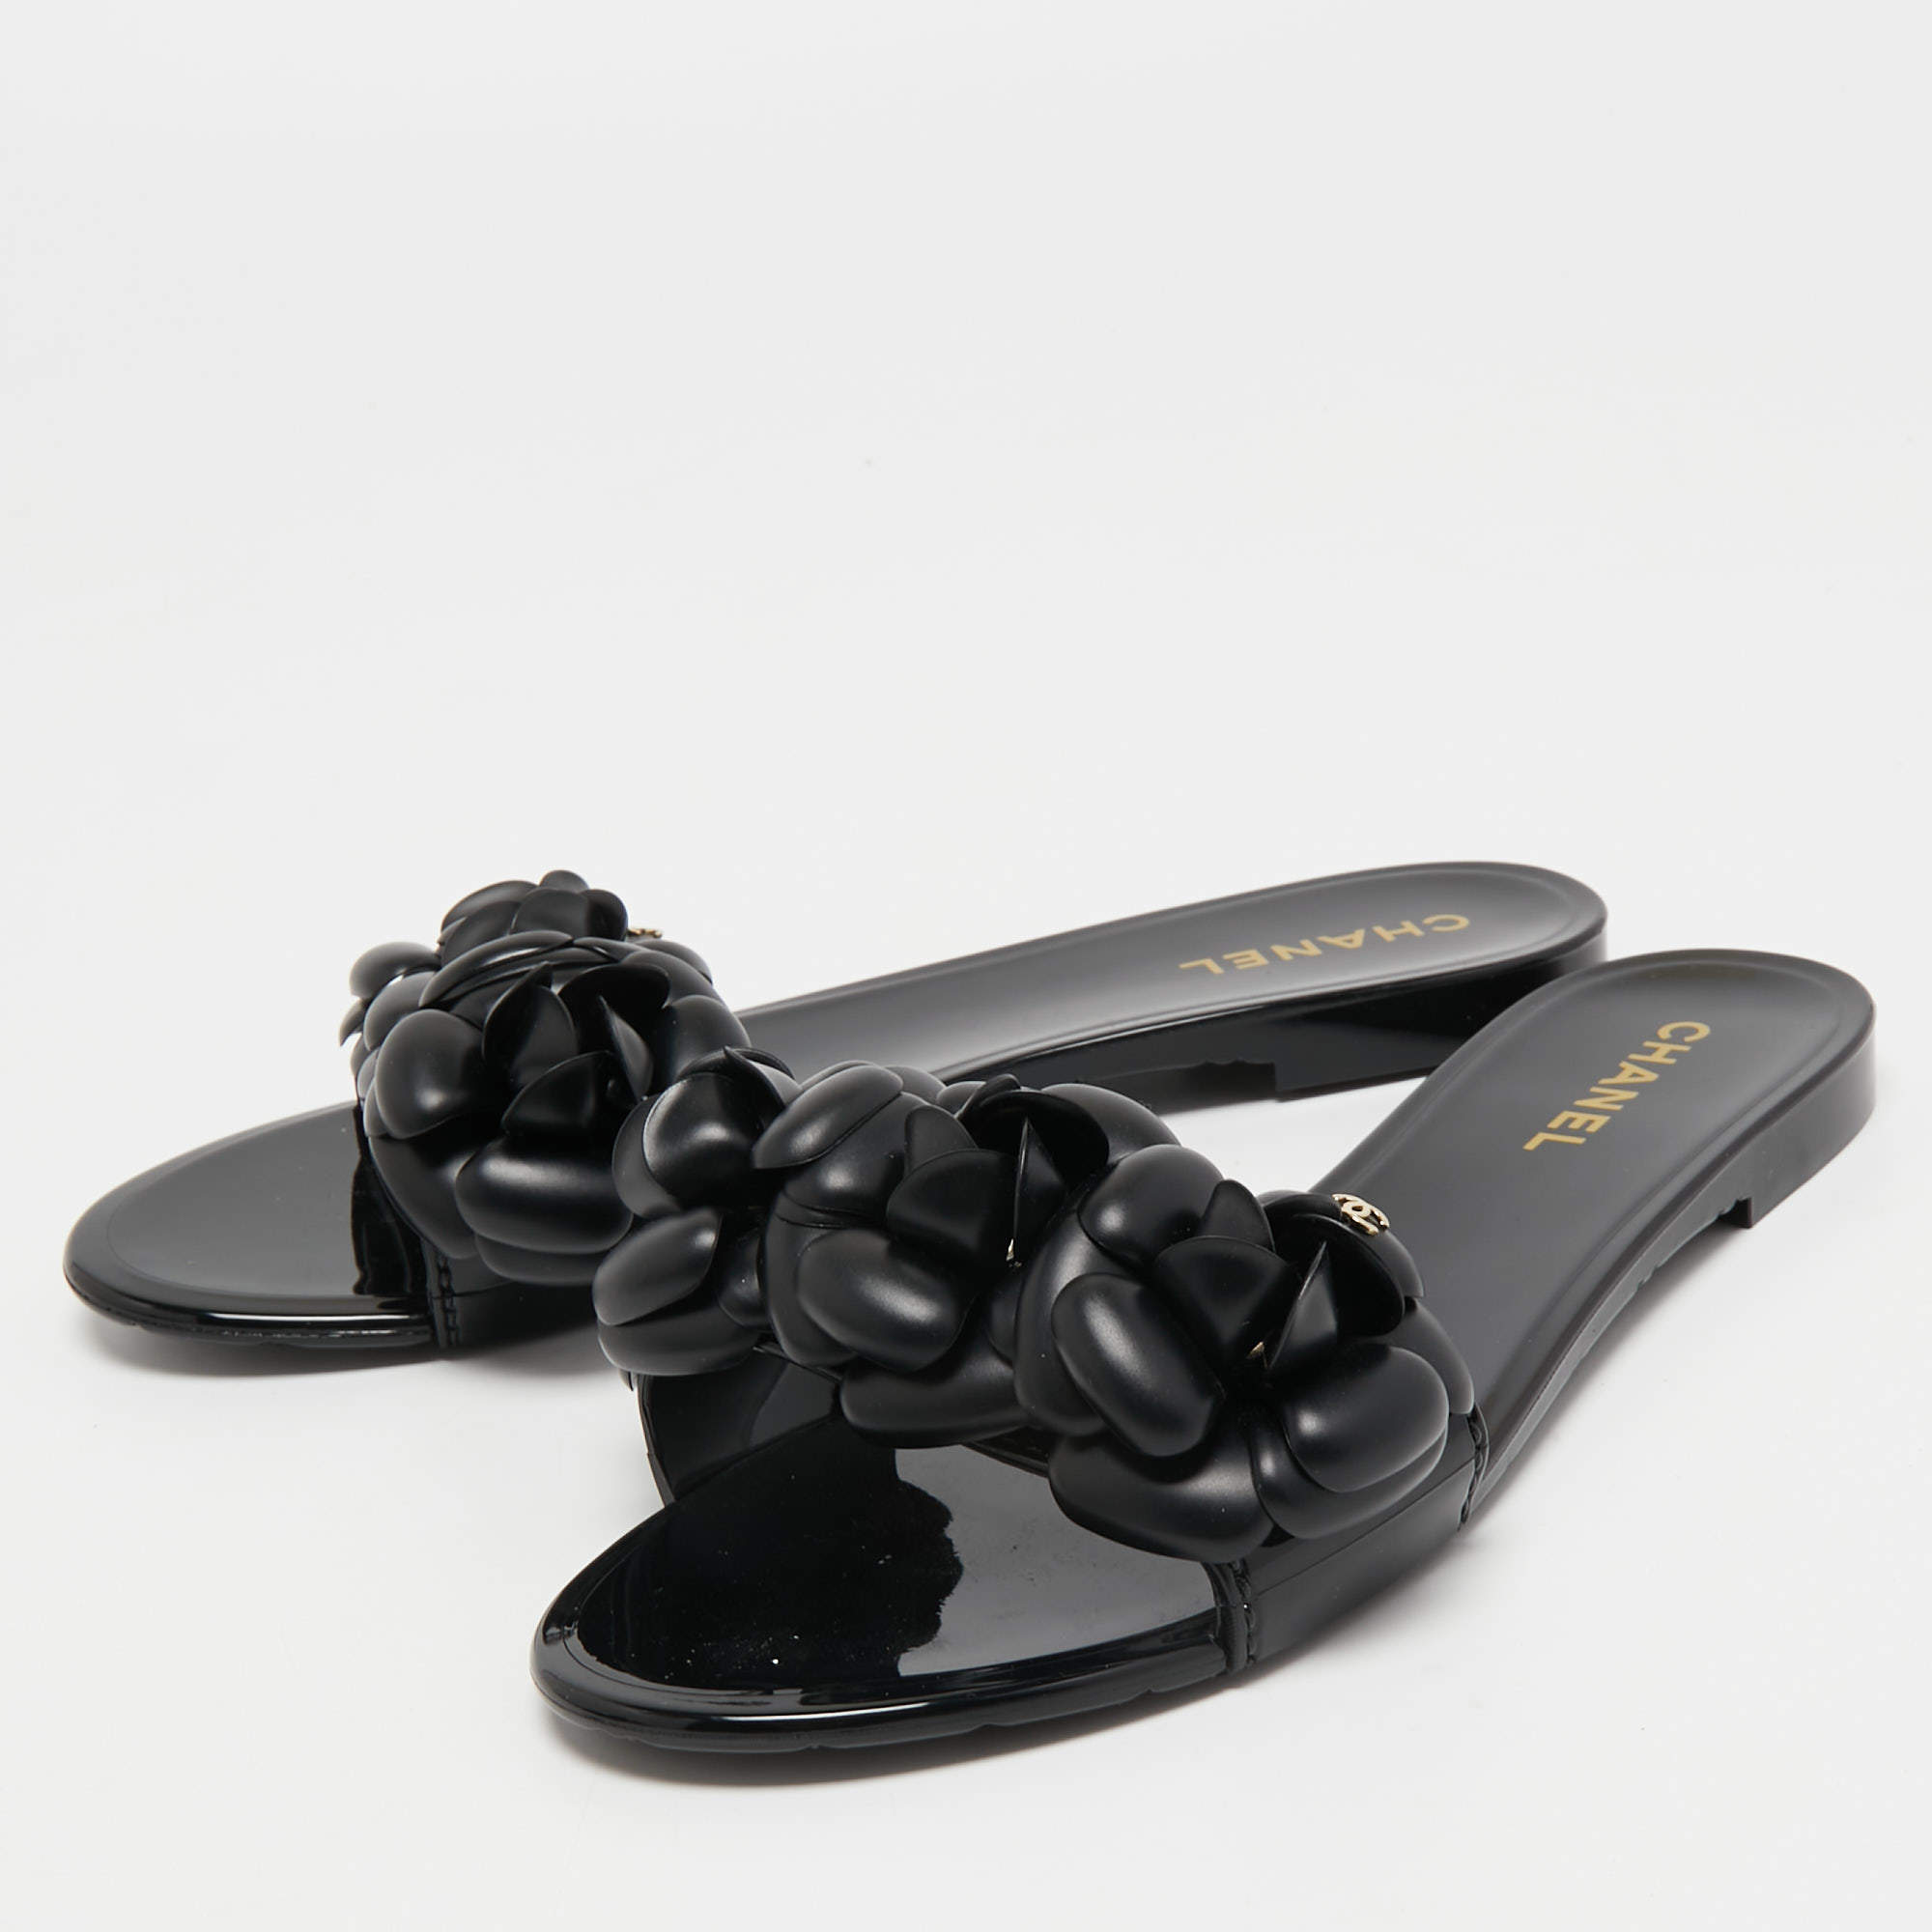 Chanel Black Rubber CC Camellia Flat Slides Size 39 - ShopStyle